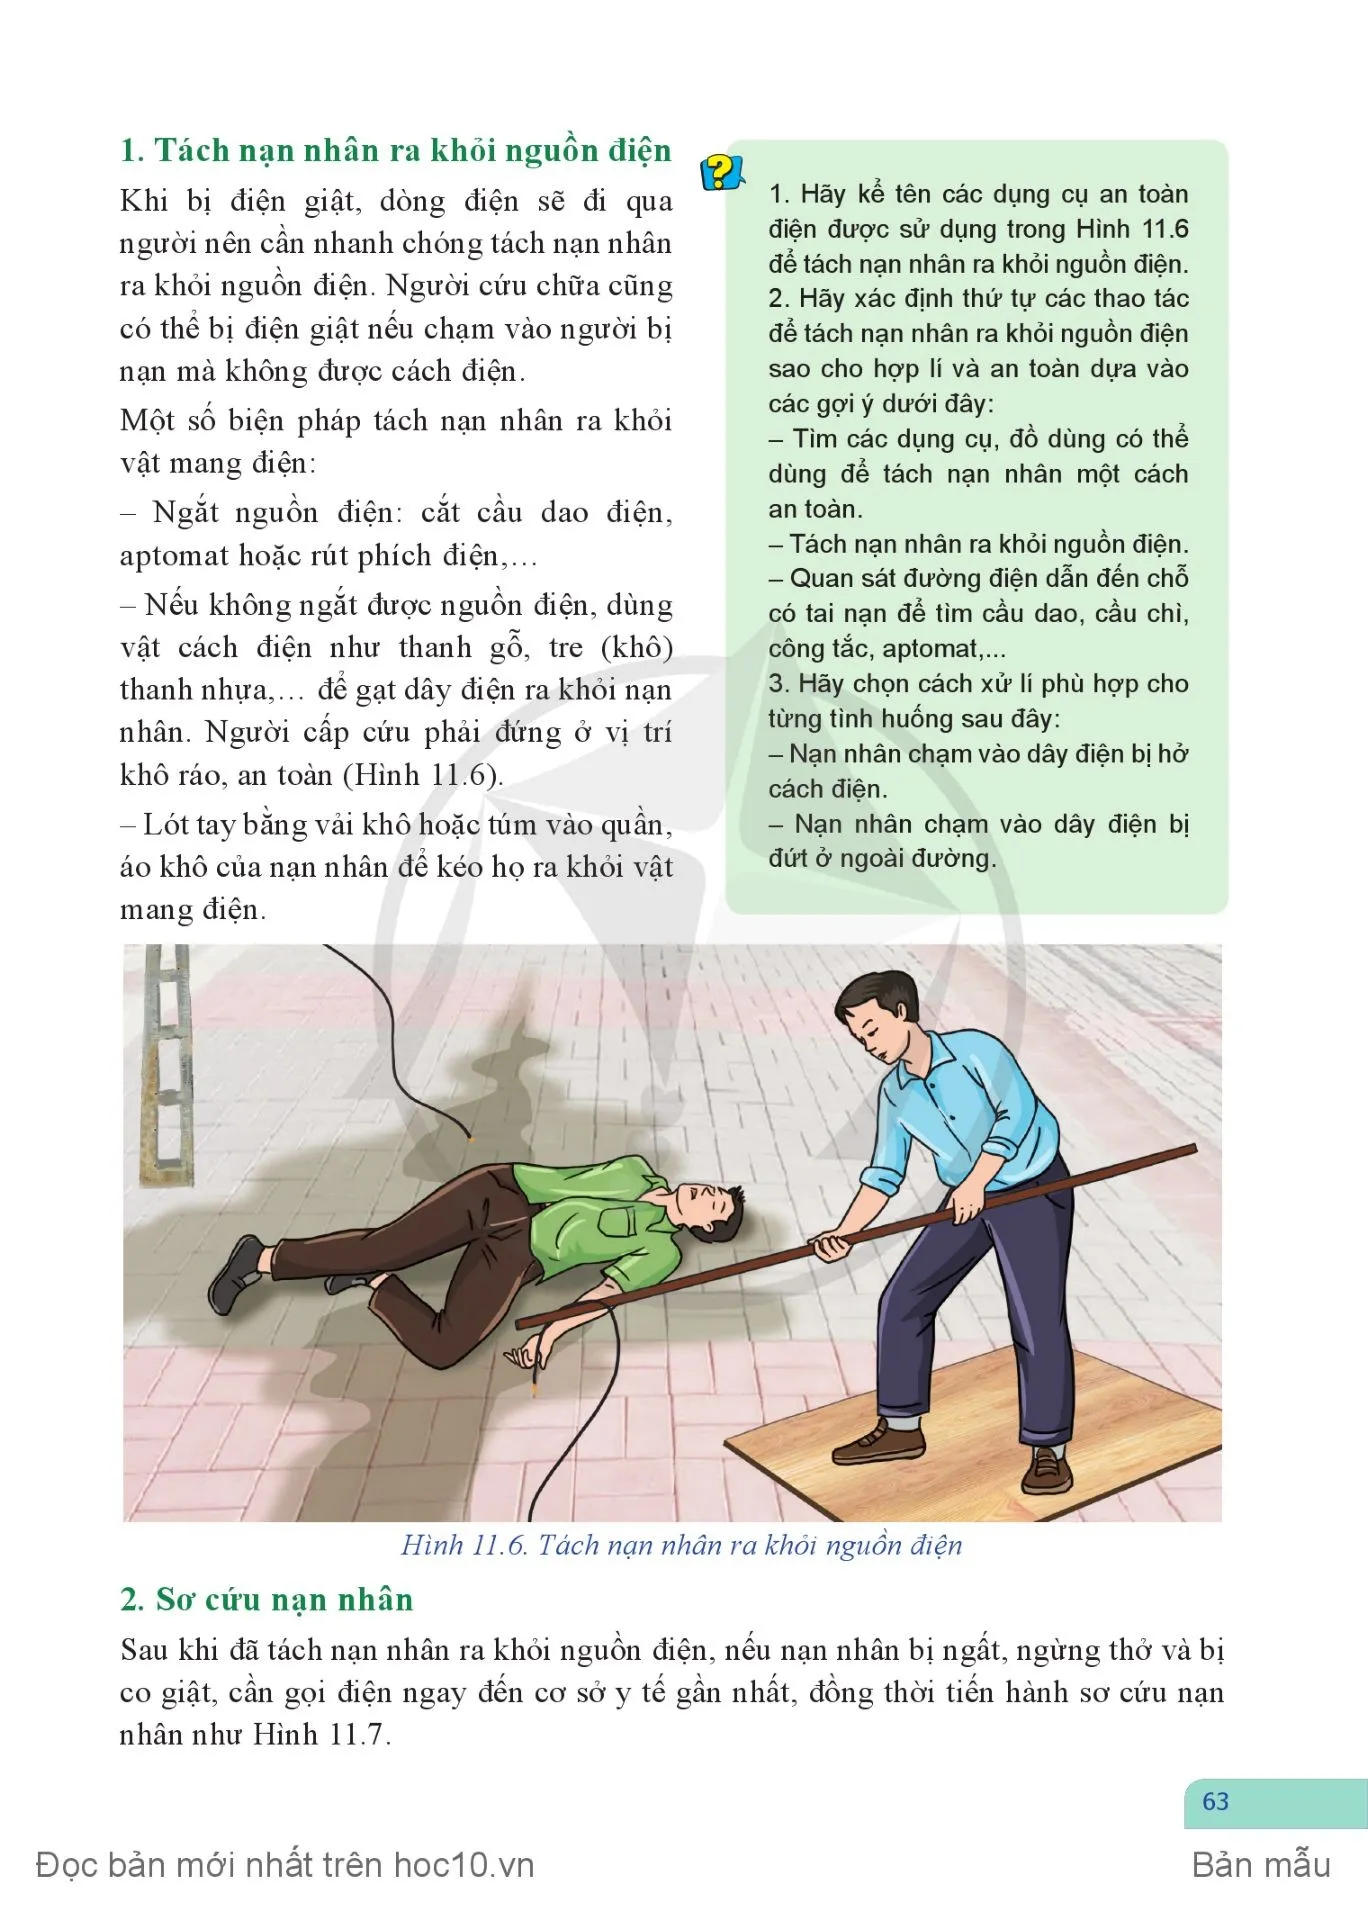 BÀI 11: Dụng cụ bảo vệ an toàn điện và cách sơ cứu người bị tai nạn điện